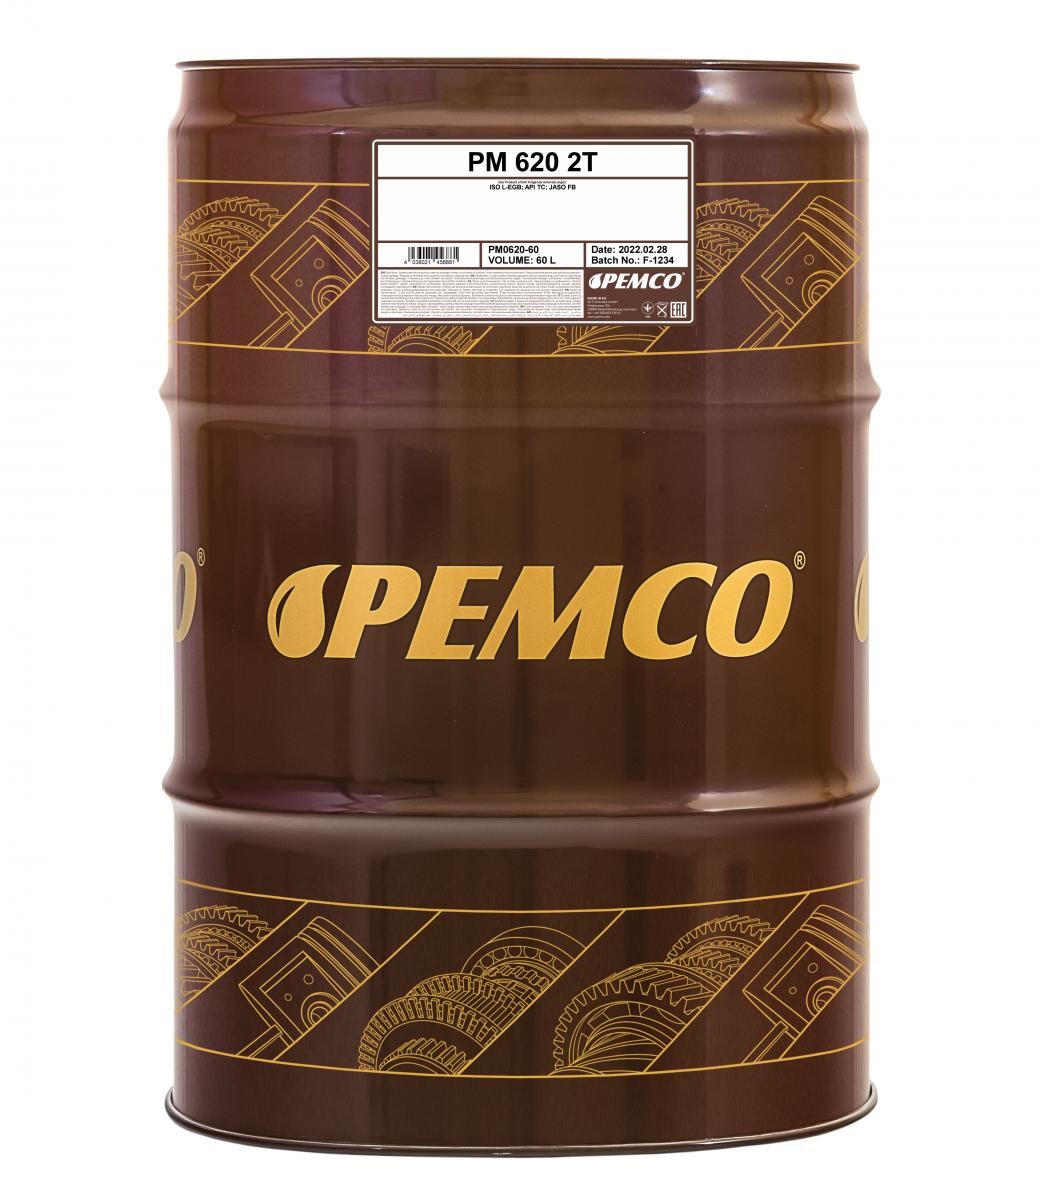 HONDA PA Motoröl 60l, Mineralöl PEMCO iTWIN 620 PM0620-60